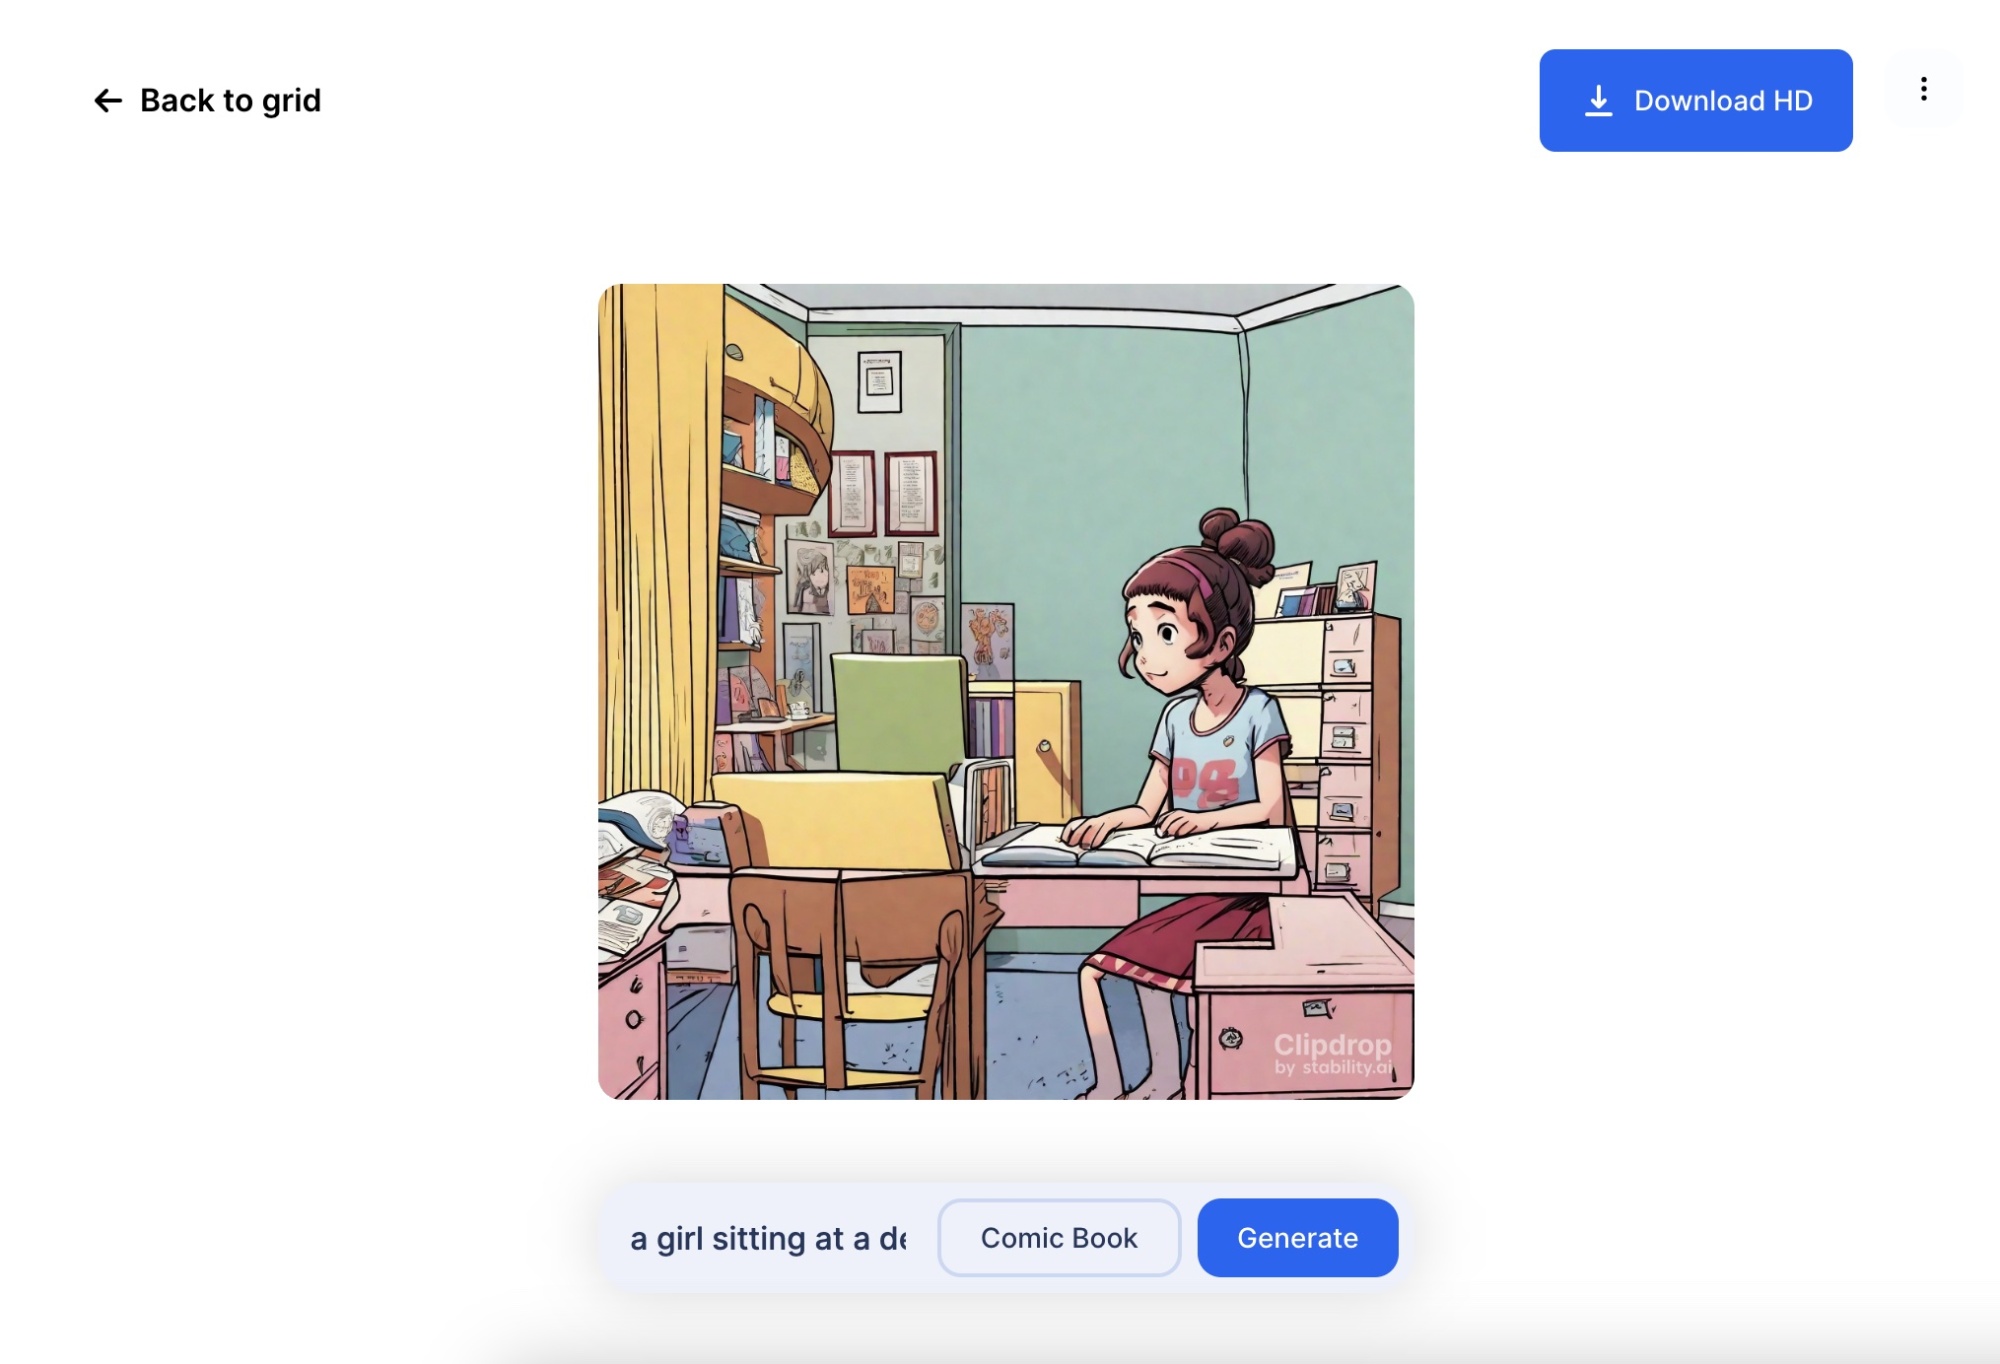 Un exemple d'utilisation de Stable AI, avec une image d'une fille assise à un bureau au milieu.